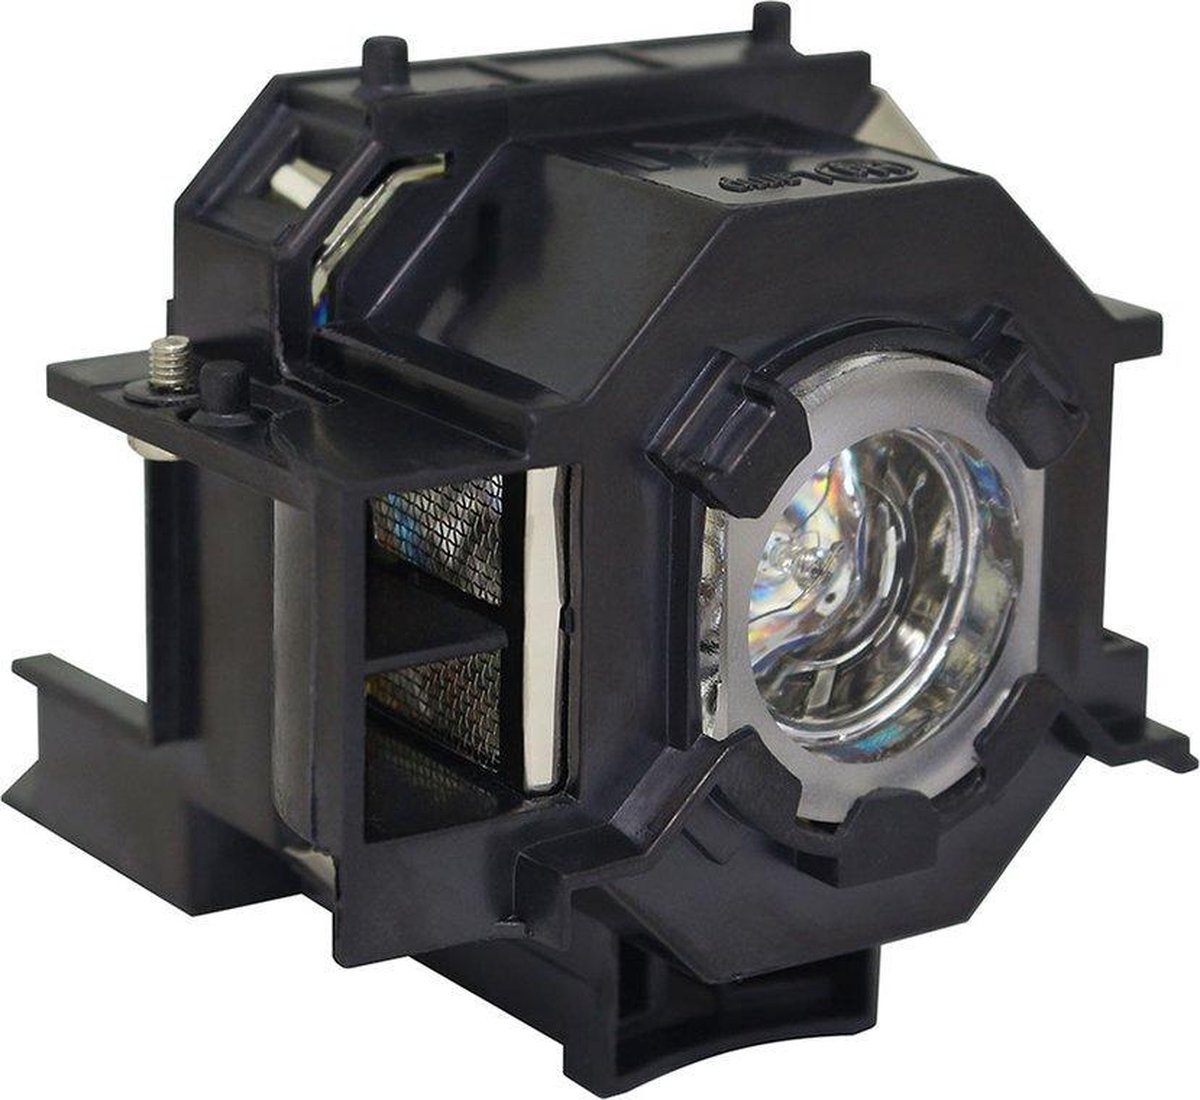 Beamerlamp geschikt voor de EPSON POWERLITE 77C beamer, lamp code LP41 / V13H010L41. Bevat originele P-VIP lamp, prestaties gelijk aan origineel. - QualityLamp